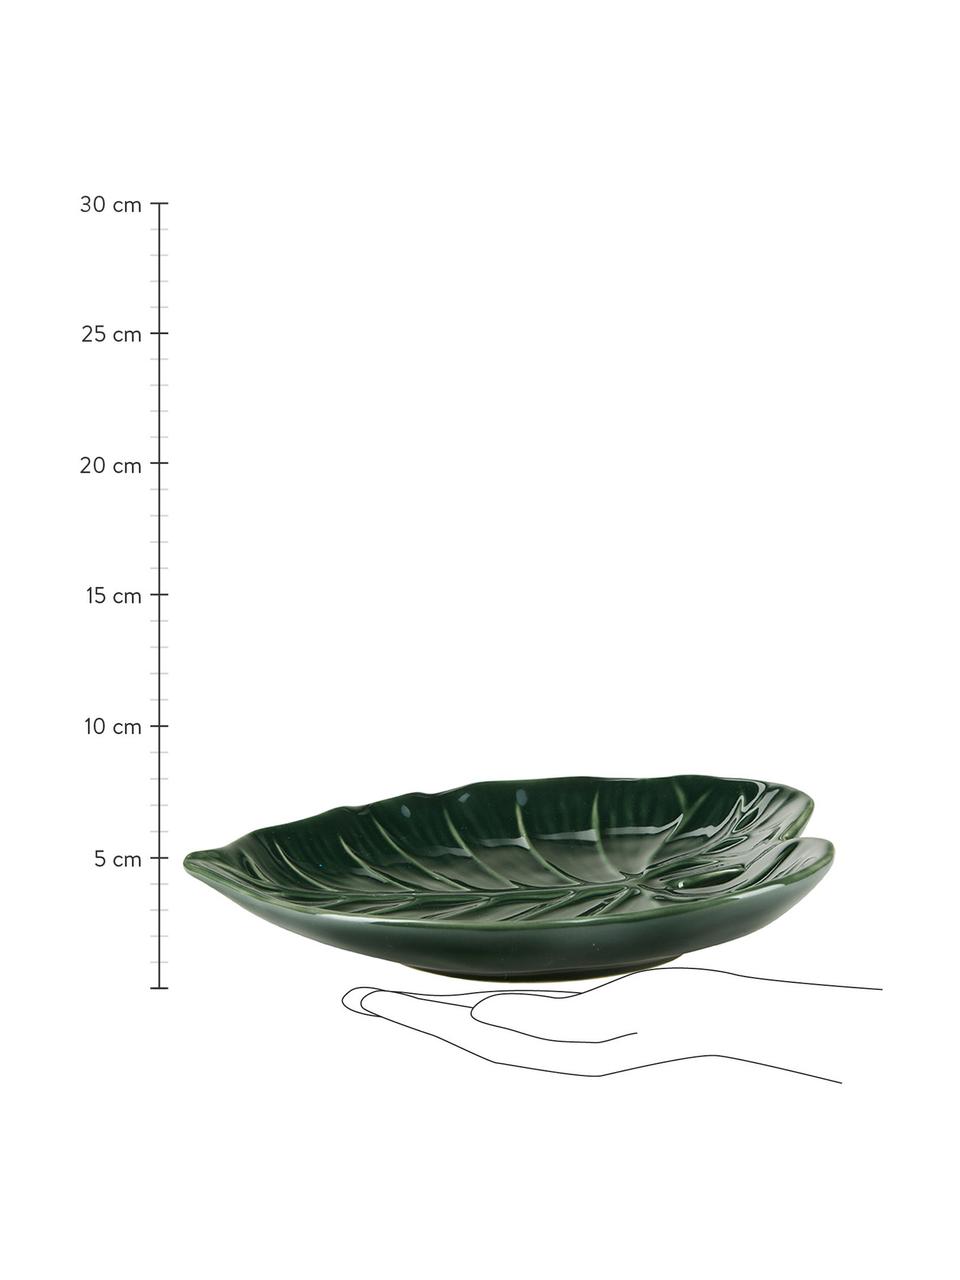 Porzellan-Servierschale Leaf in Grün, L 25 x B 20 cm, Porzellan, Grün, L 25 x B 20 cm